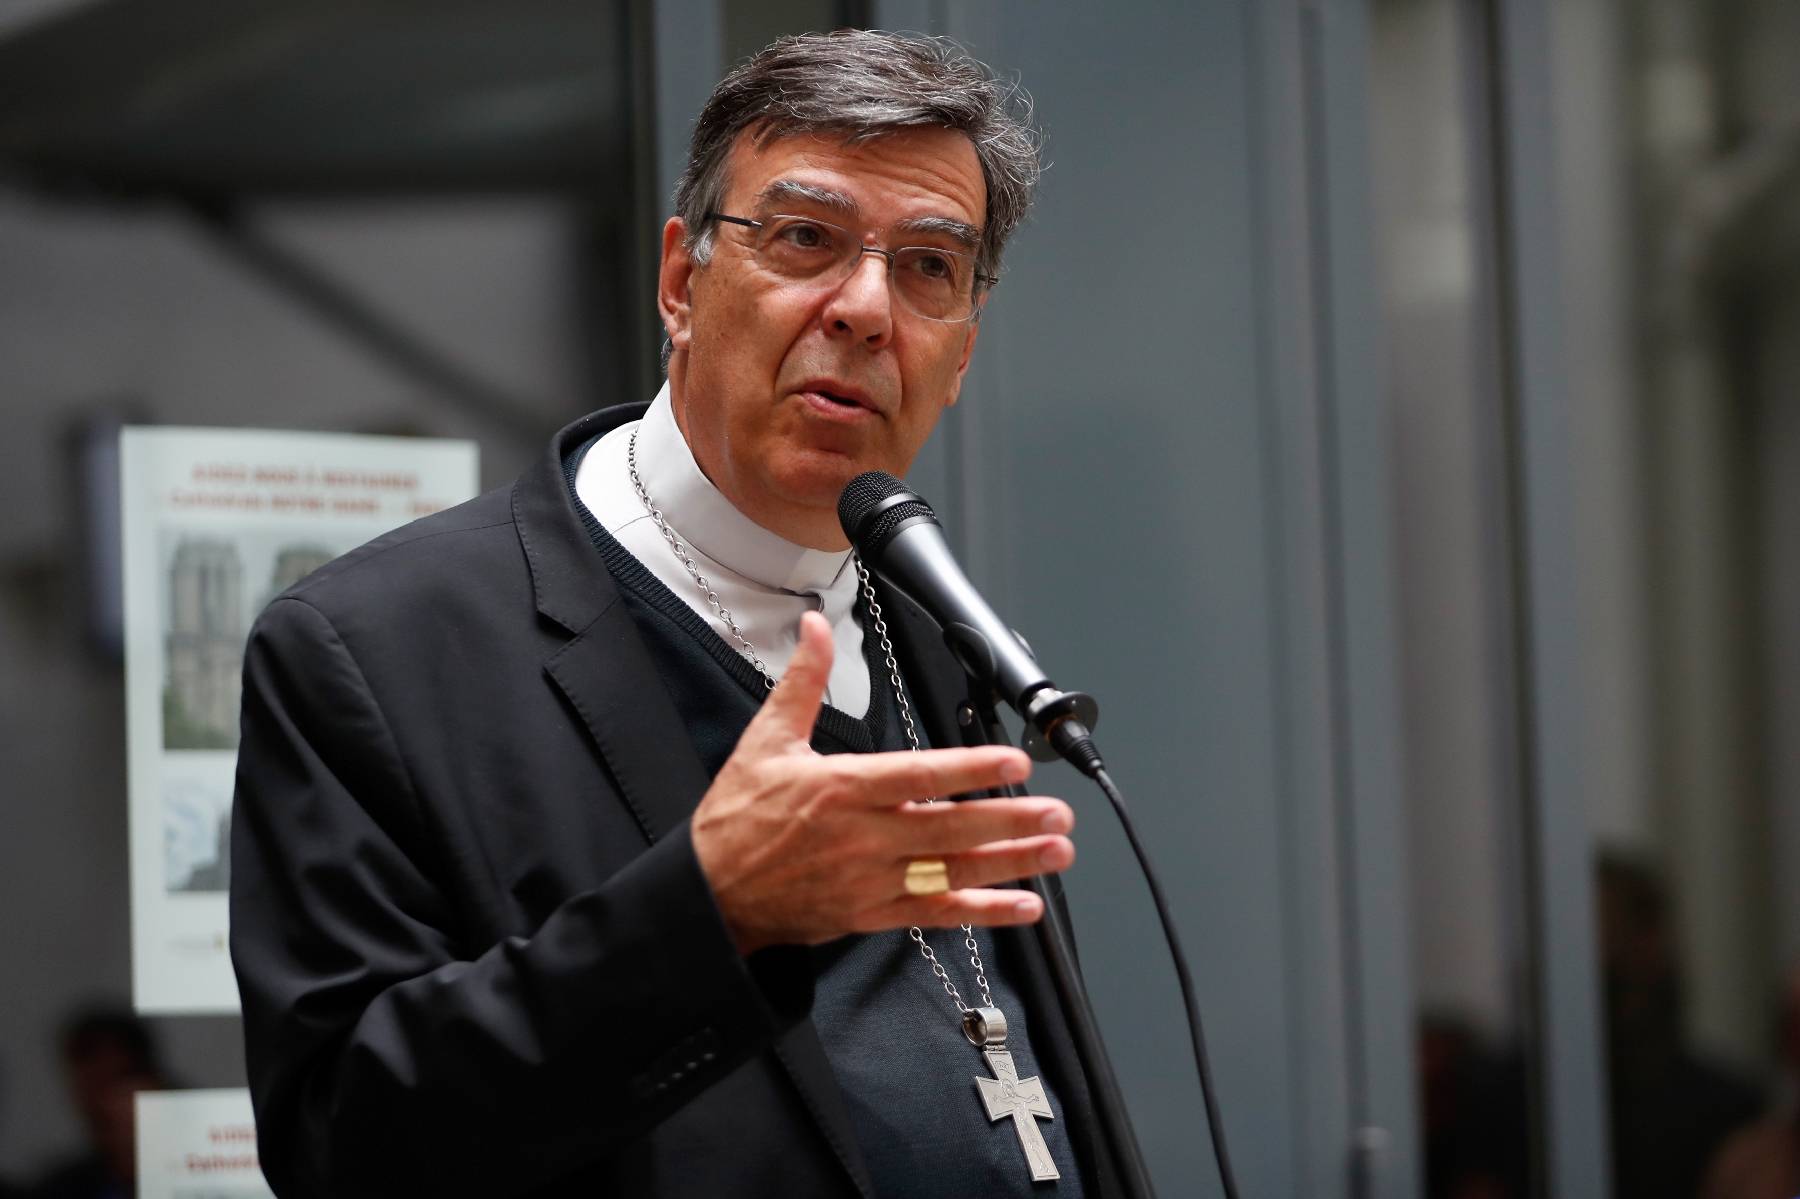 L'ex-archevêque de Paris visé par une enquête pour agression sexuelle